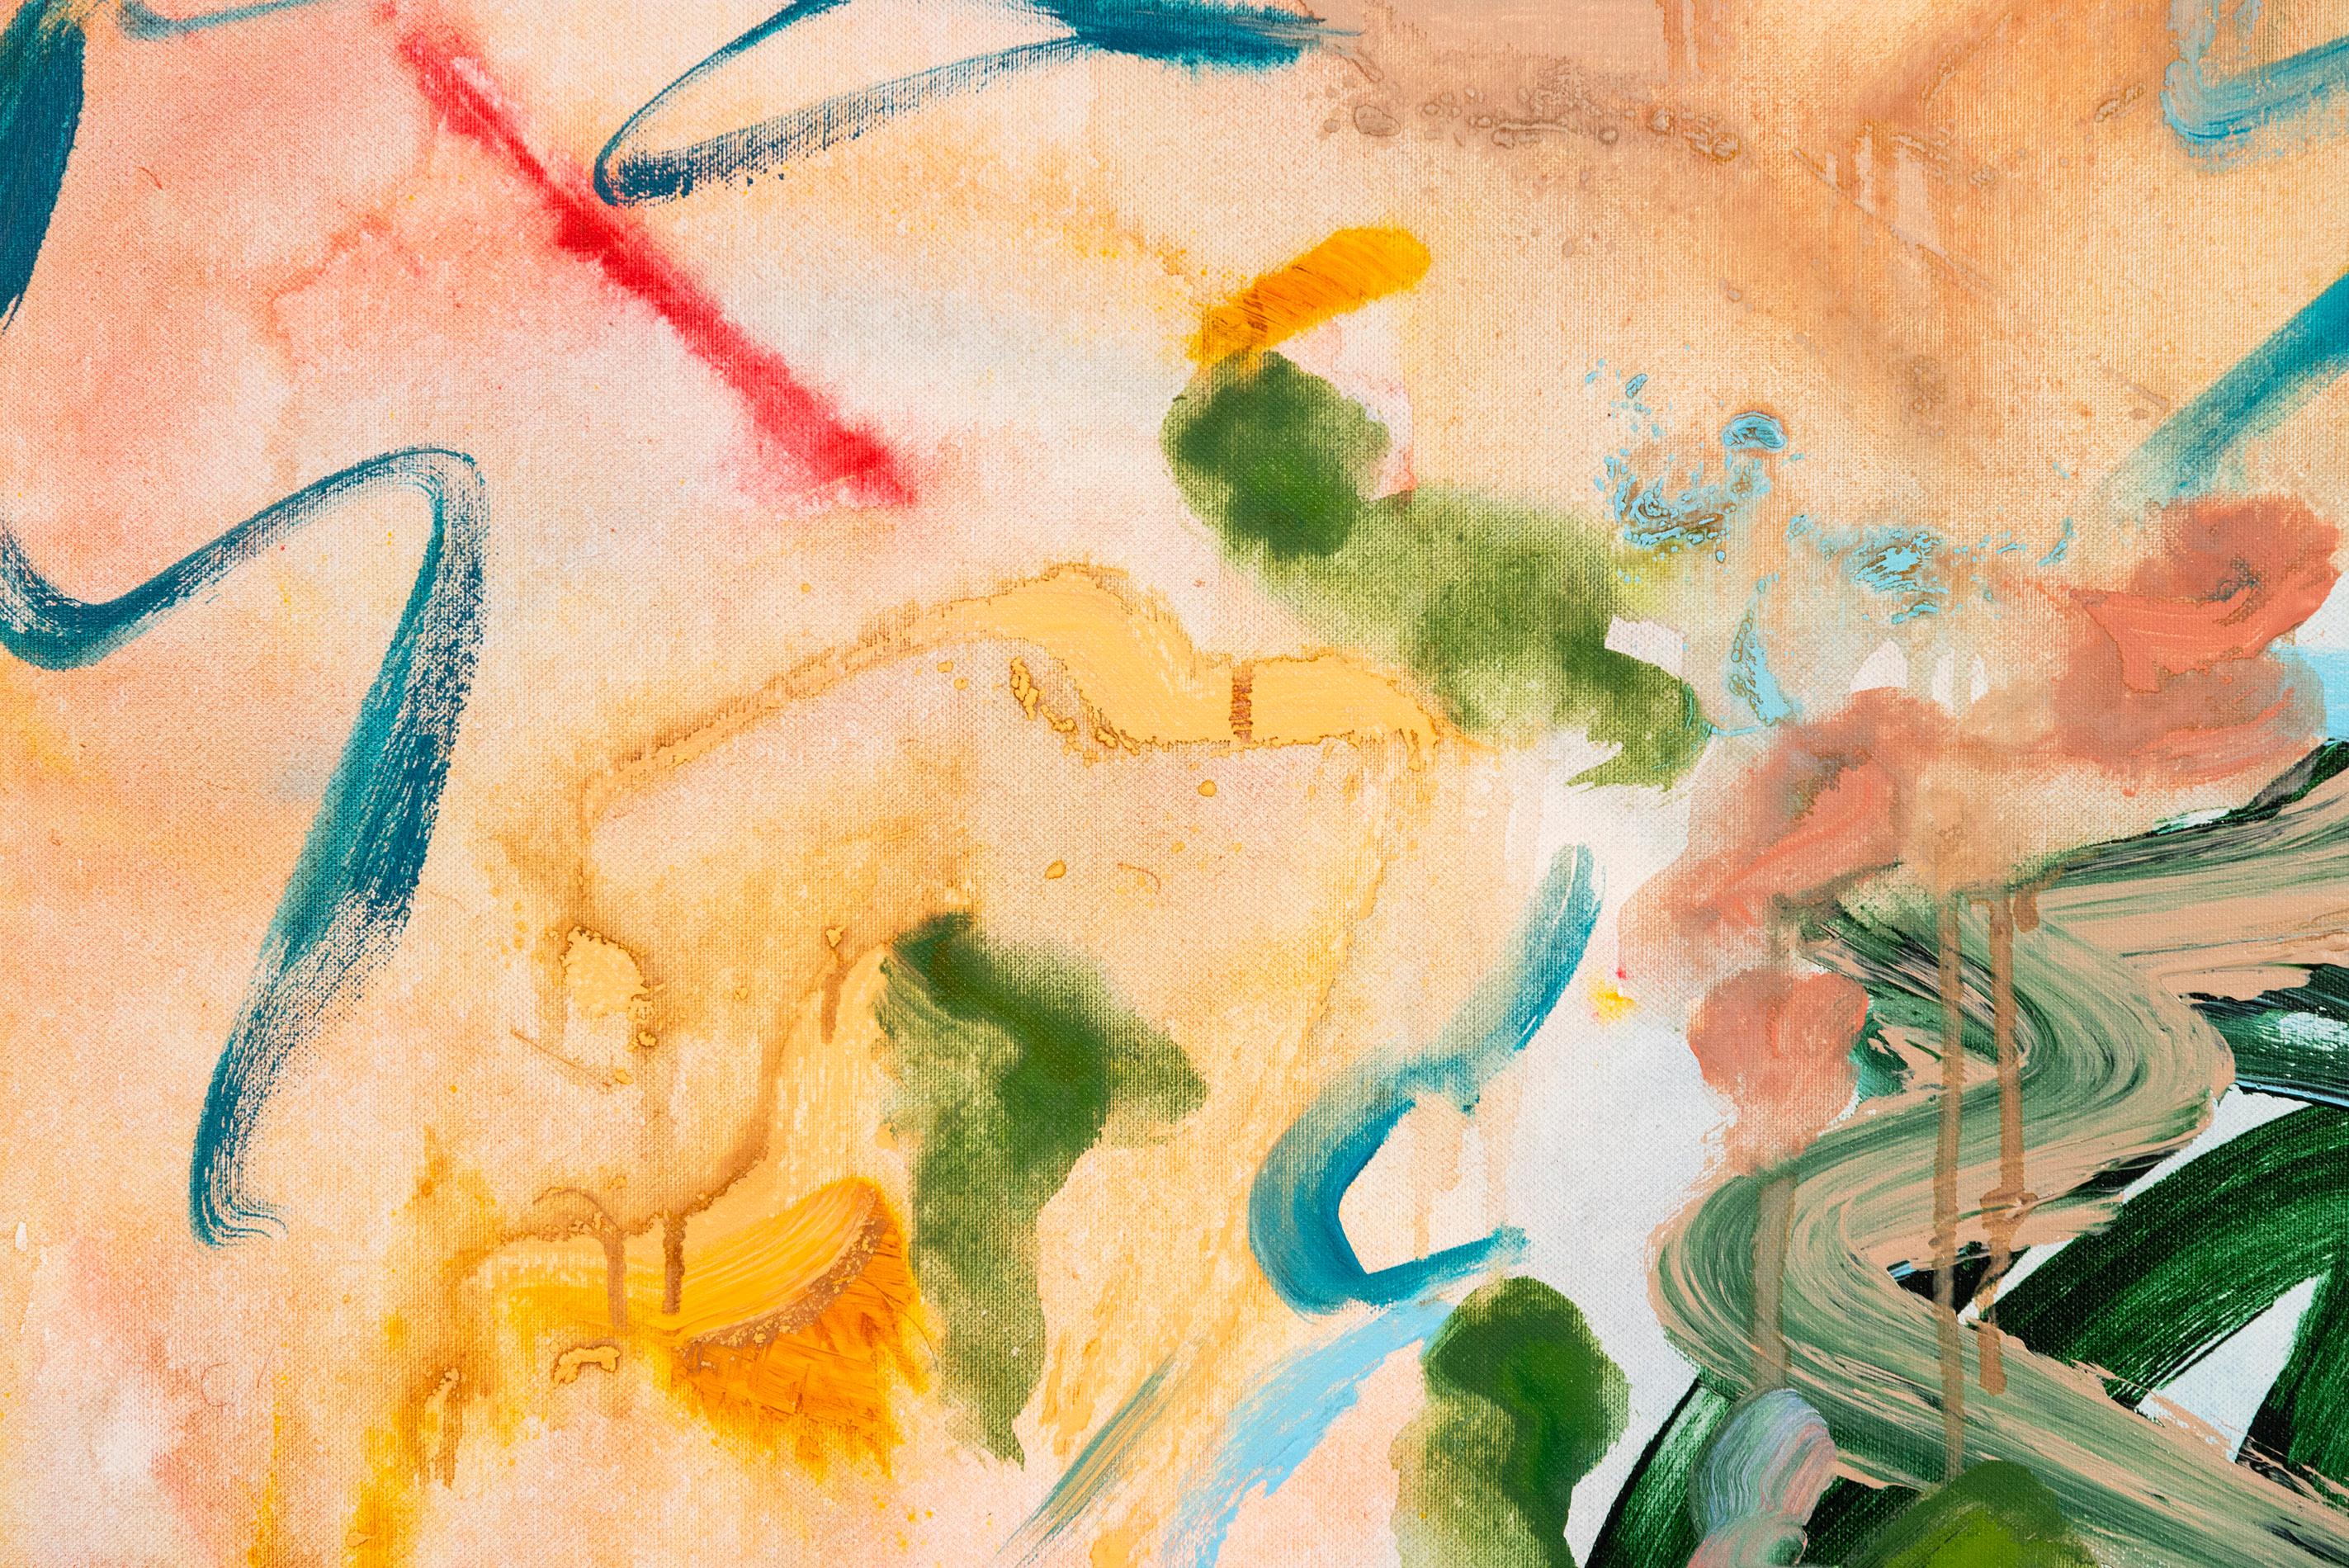 Dans cette peinture abstraite de l'artiste visuel Richard Tosczak, des vagues de couleurs bleues, orange et vertes sont exprimées par des coups de pinceau gestuels. En collaboration avec une artiste italienne 